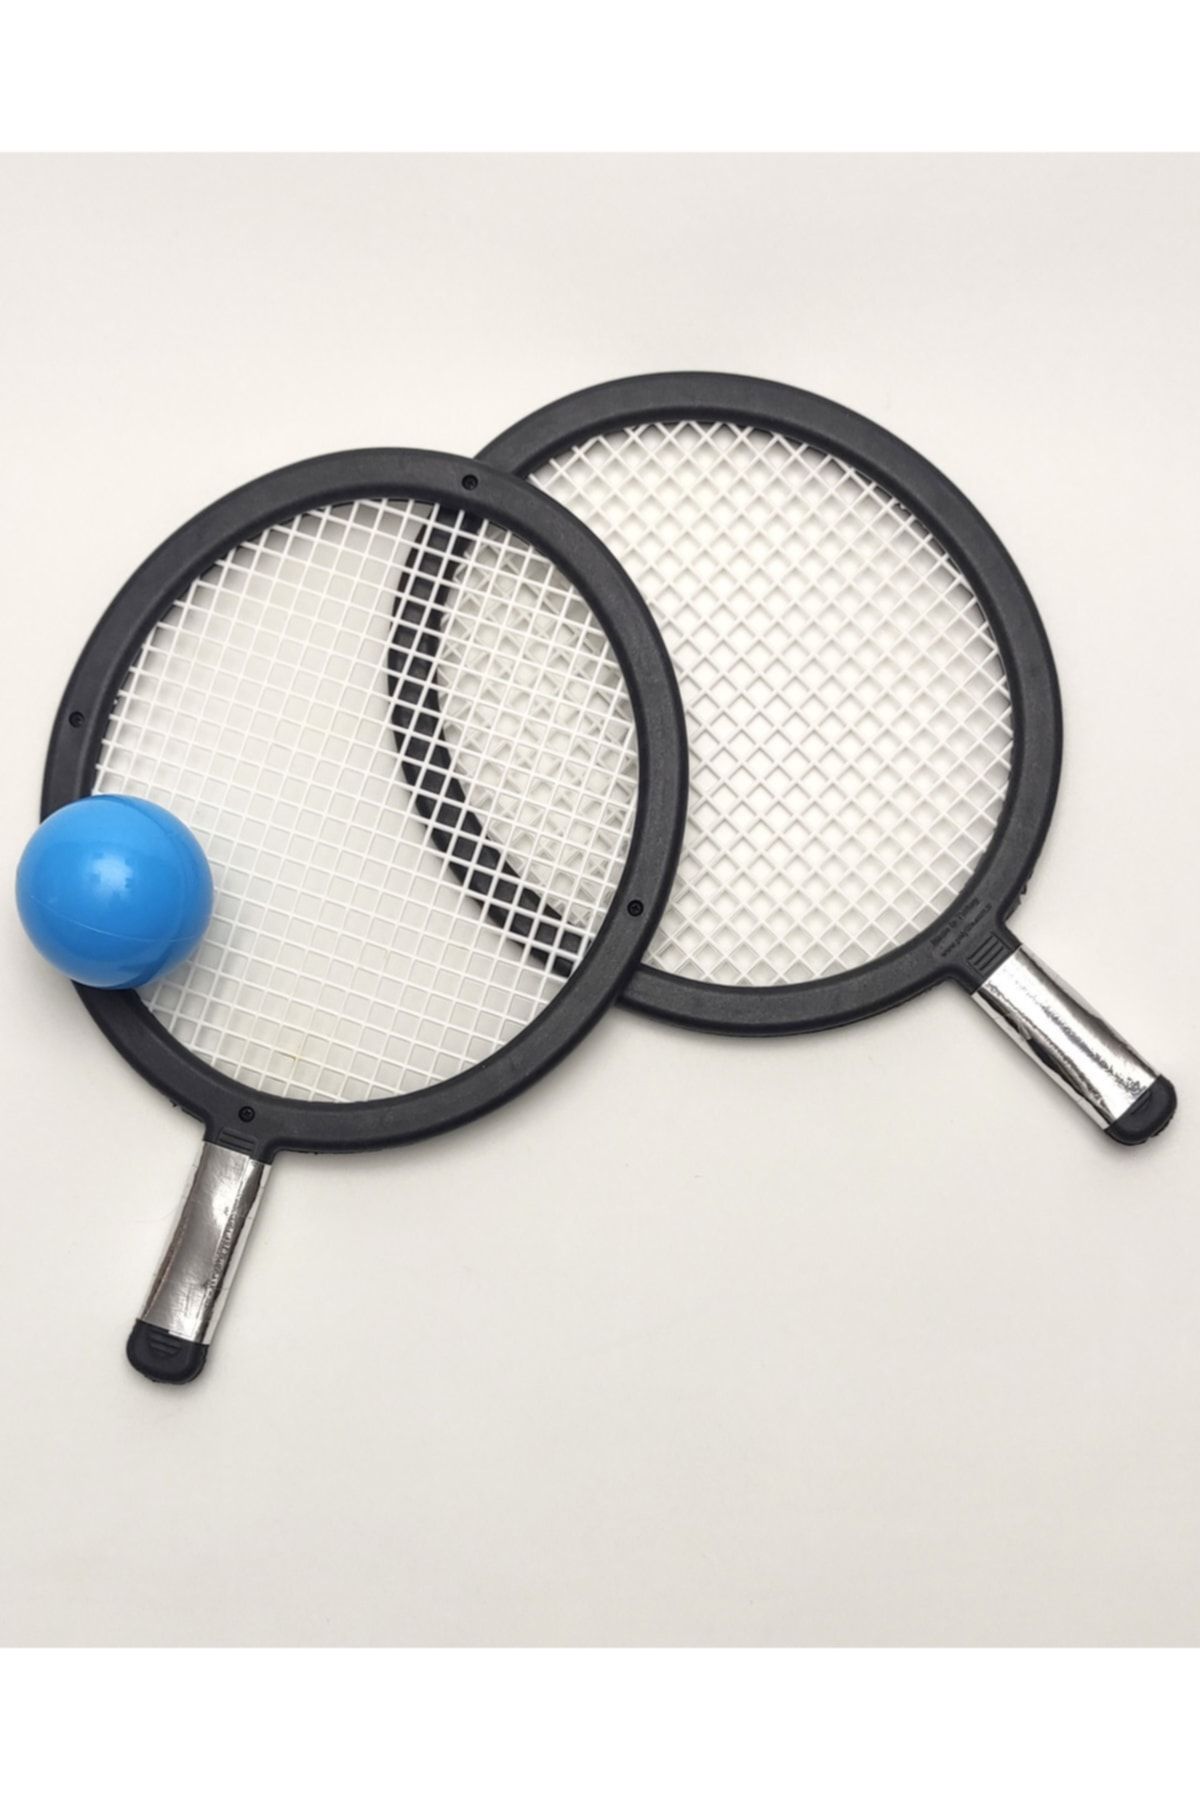 Papakudi Raket Tenis Seti Oyunu - 2 Adet Raket ve Bir Top Eğitici Eğlenceli